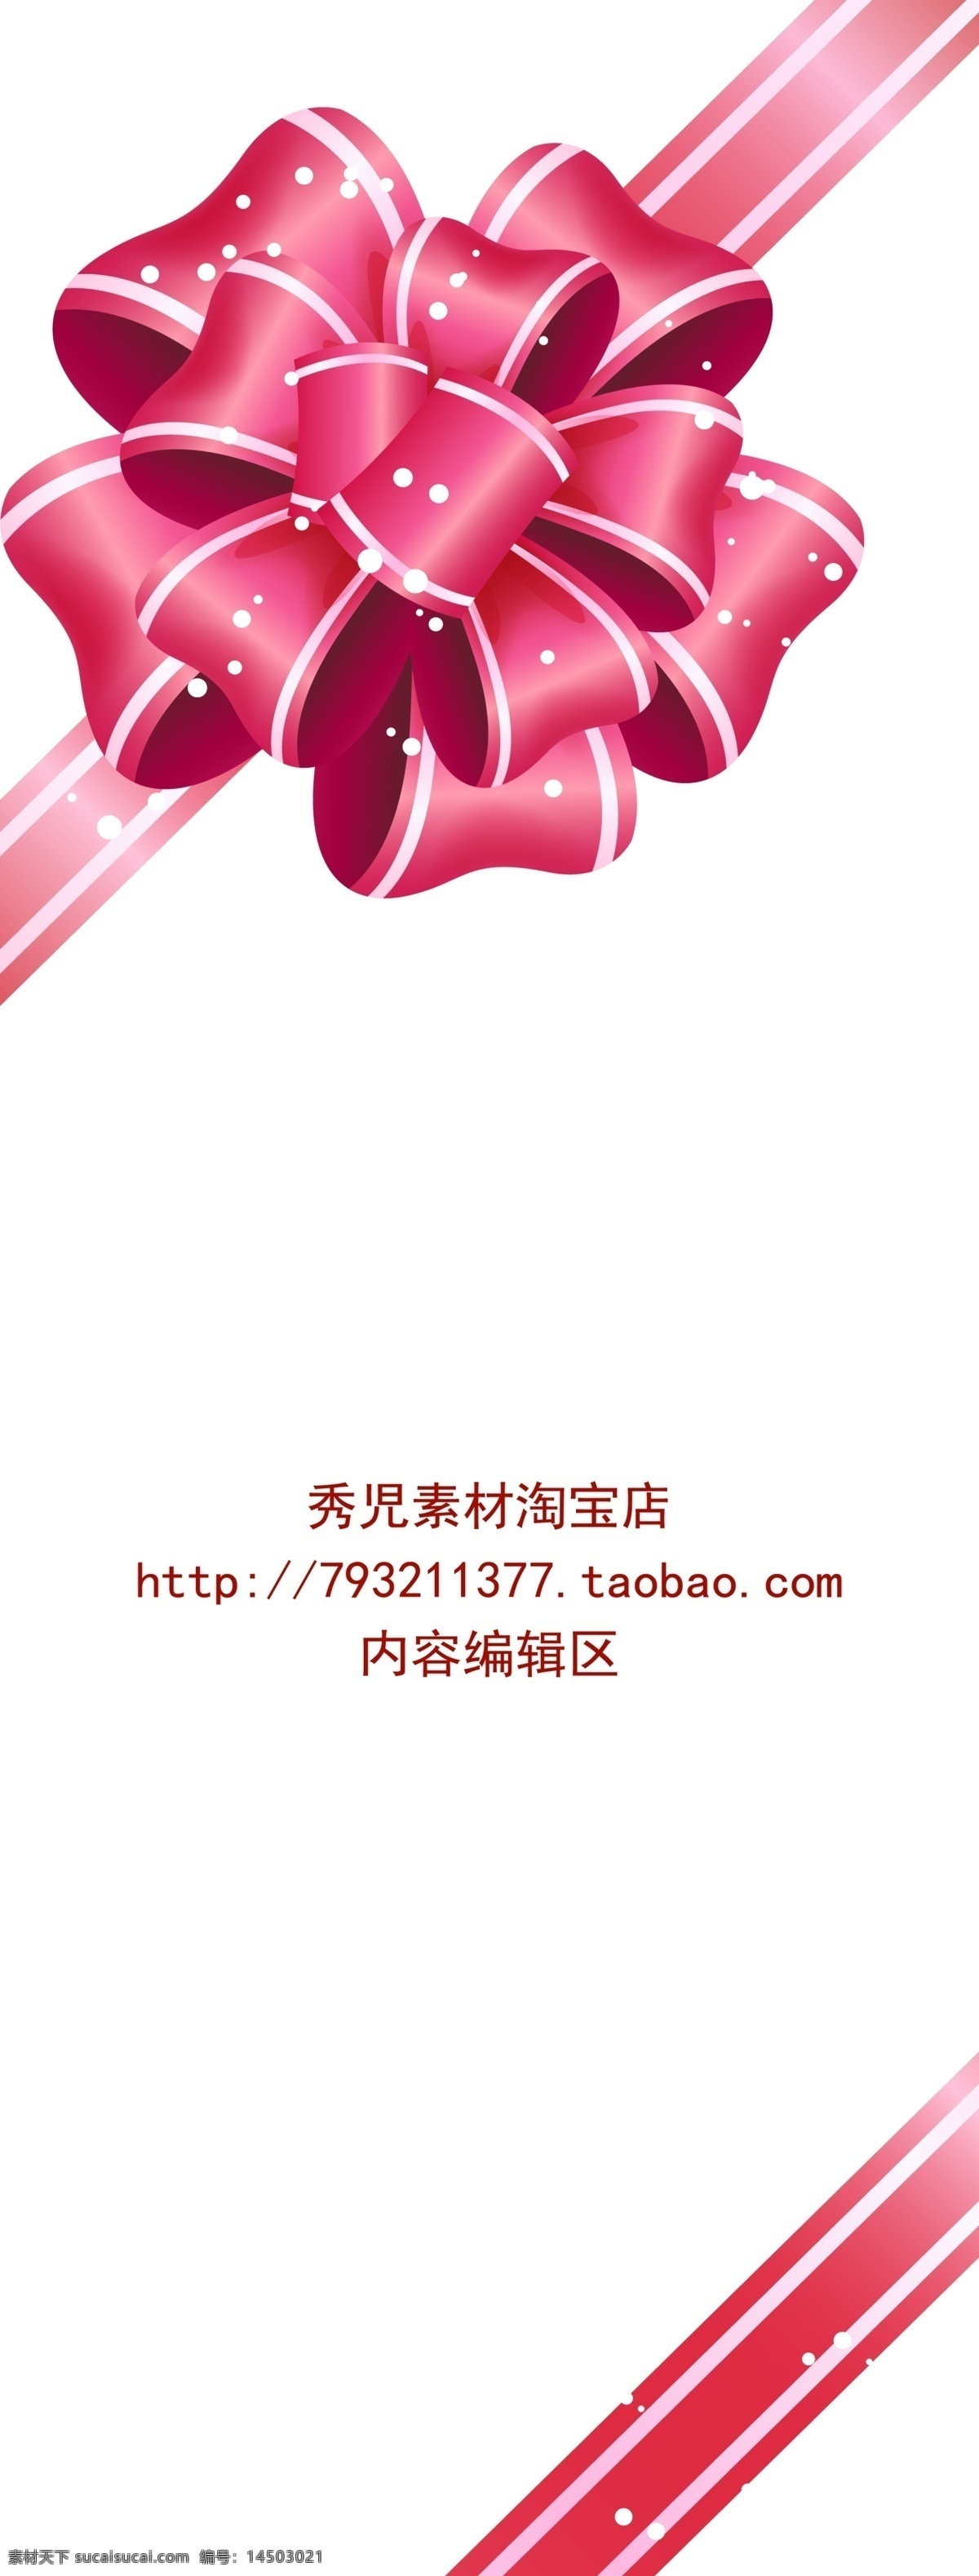 粉色 精美 中国结 展架 模板 画面 粉色中国结 精美中国结 中国结素材 展架模板 展架模板素材 精美展架 展架海报 海报画面 白色